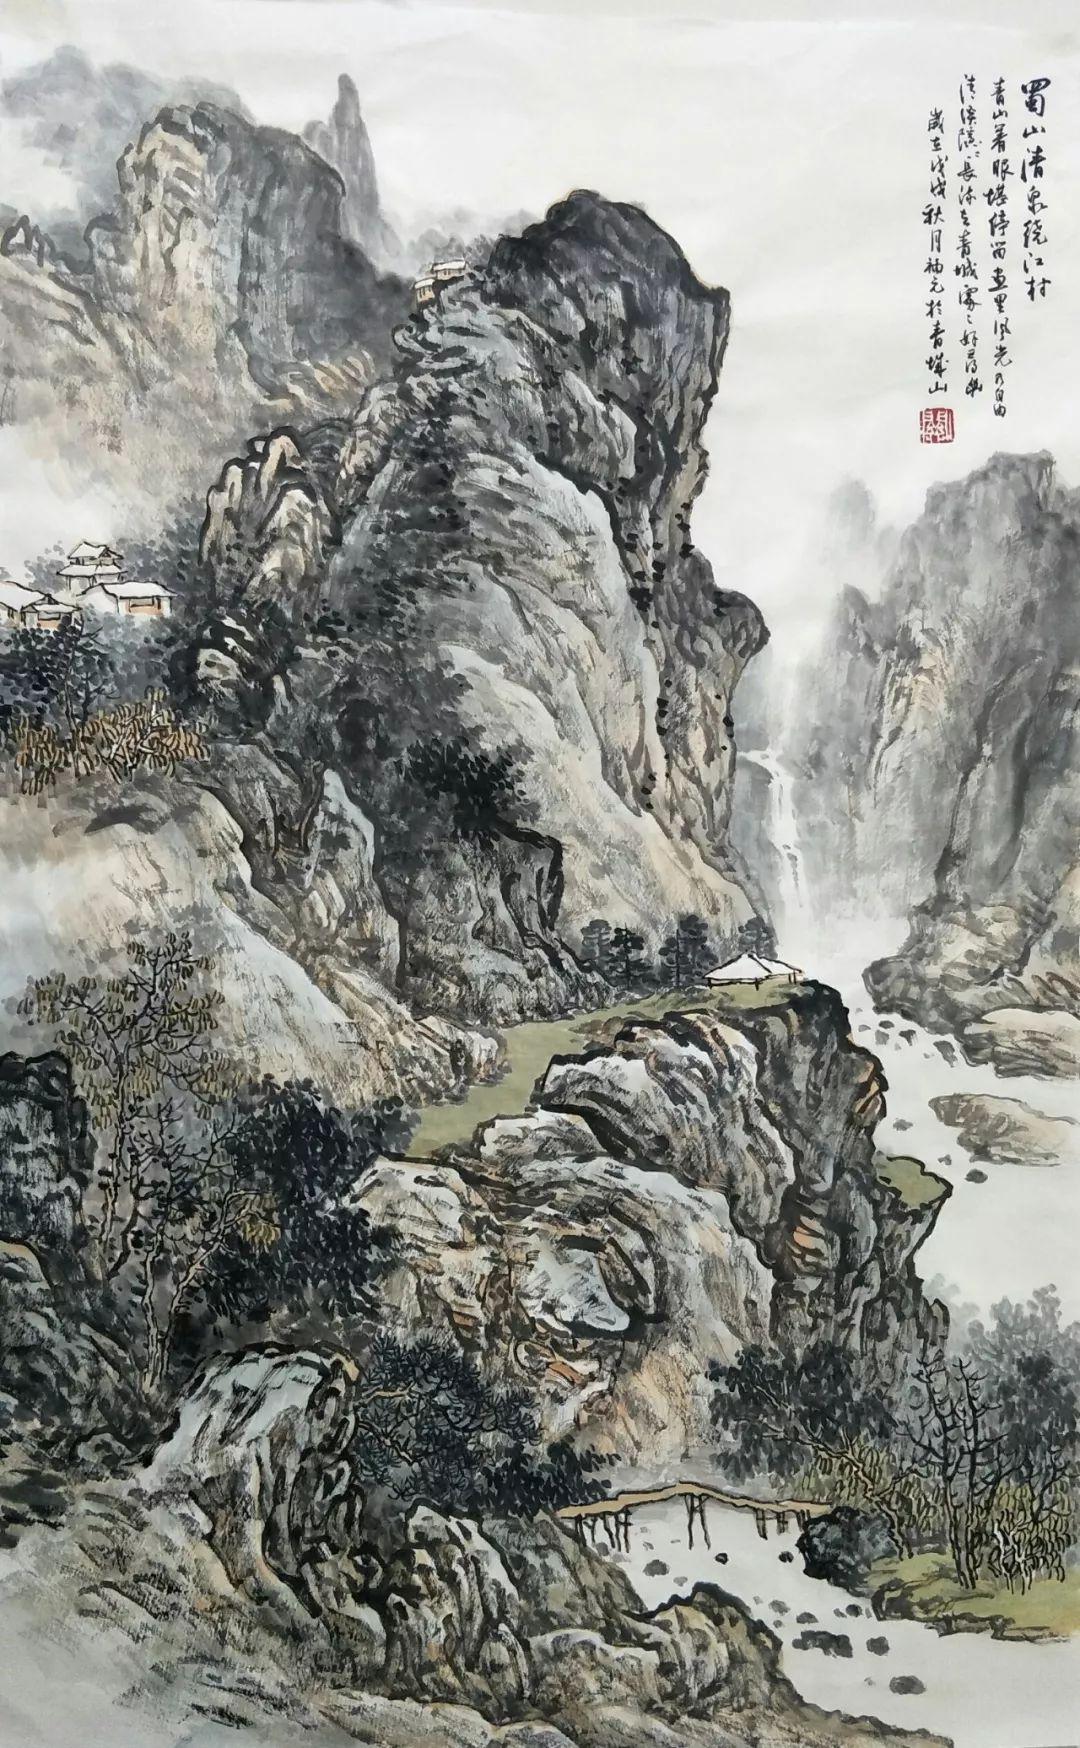 原创艺惠藏·关福元山水画意境高远,浑厚华滋,具有强烈的时代气息